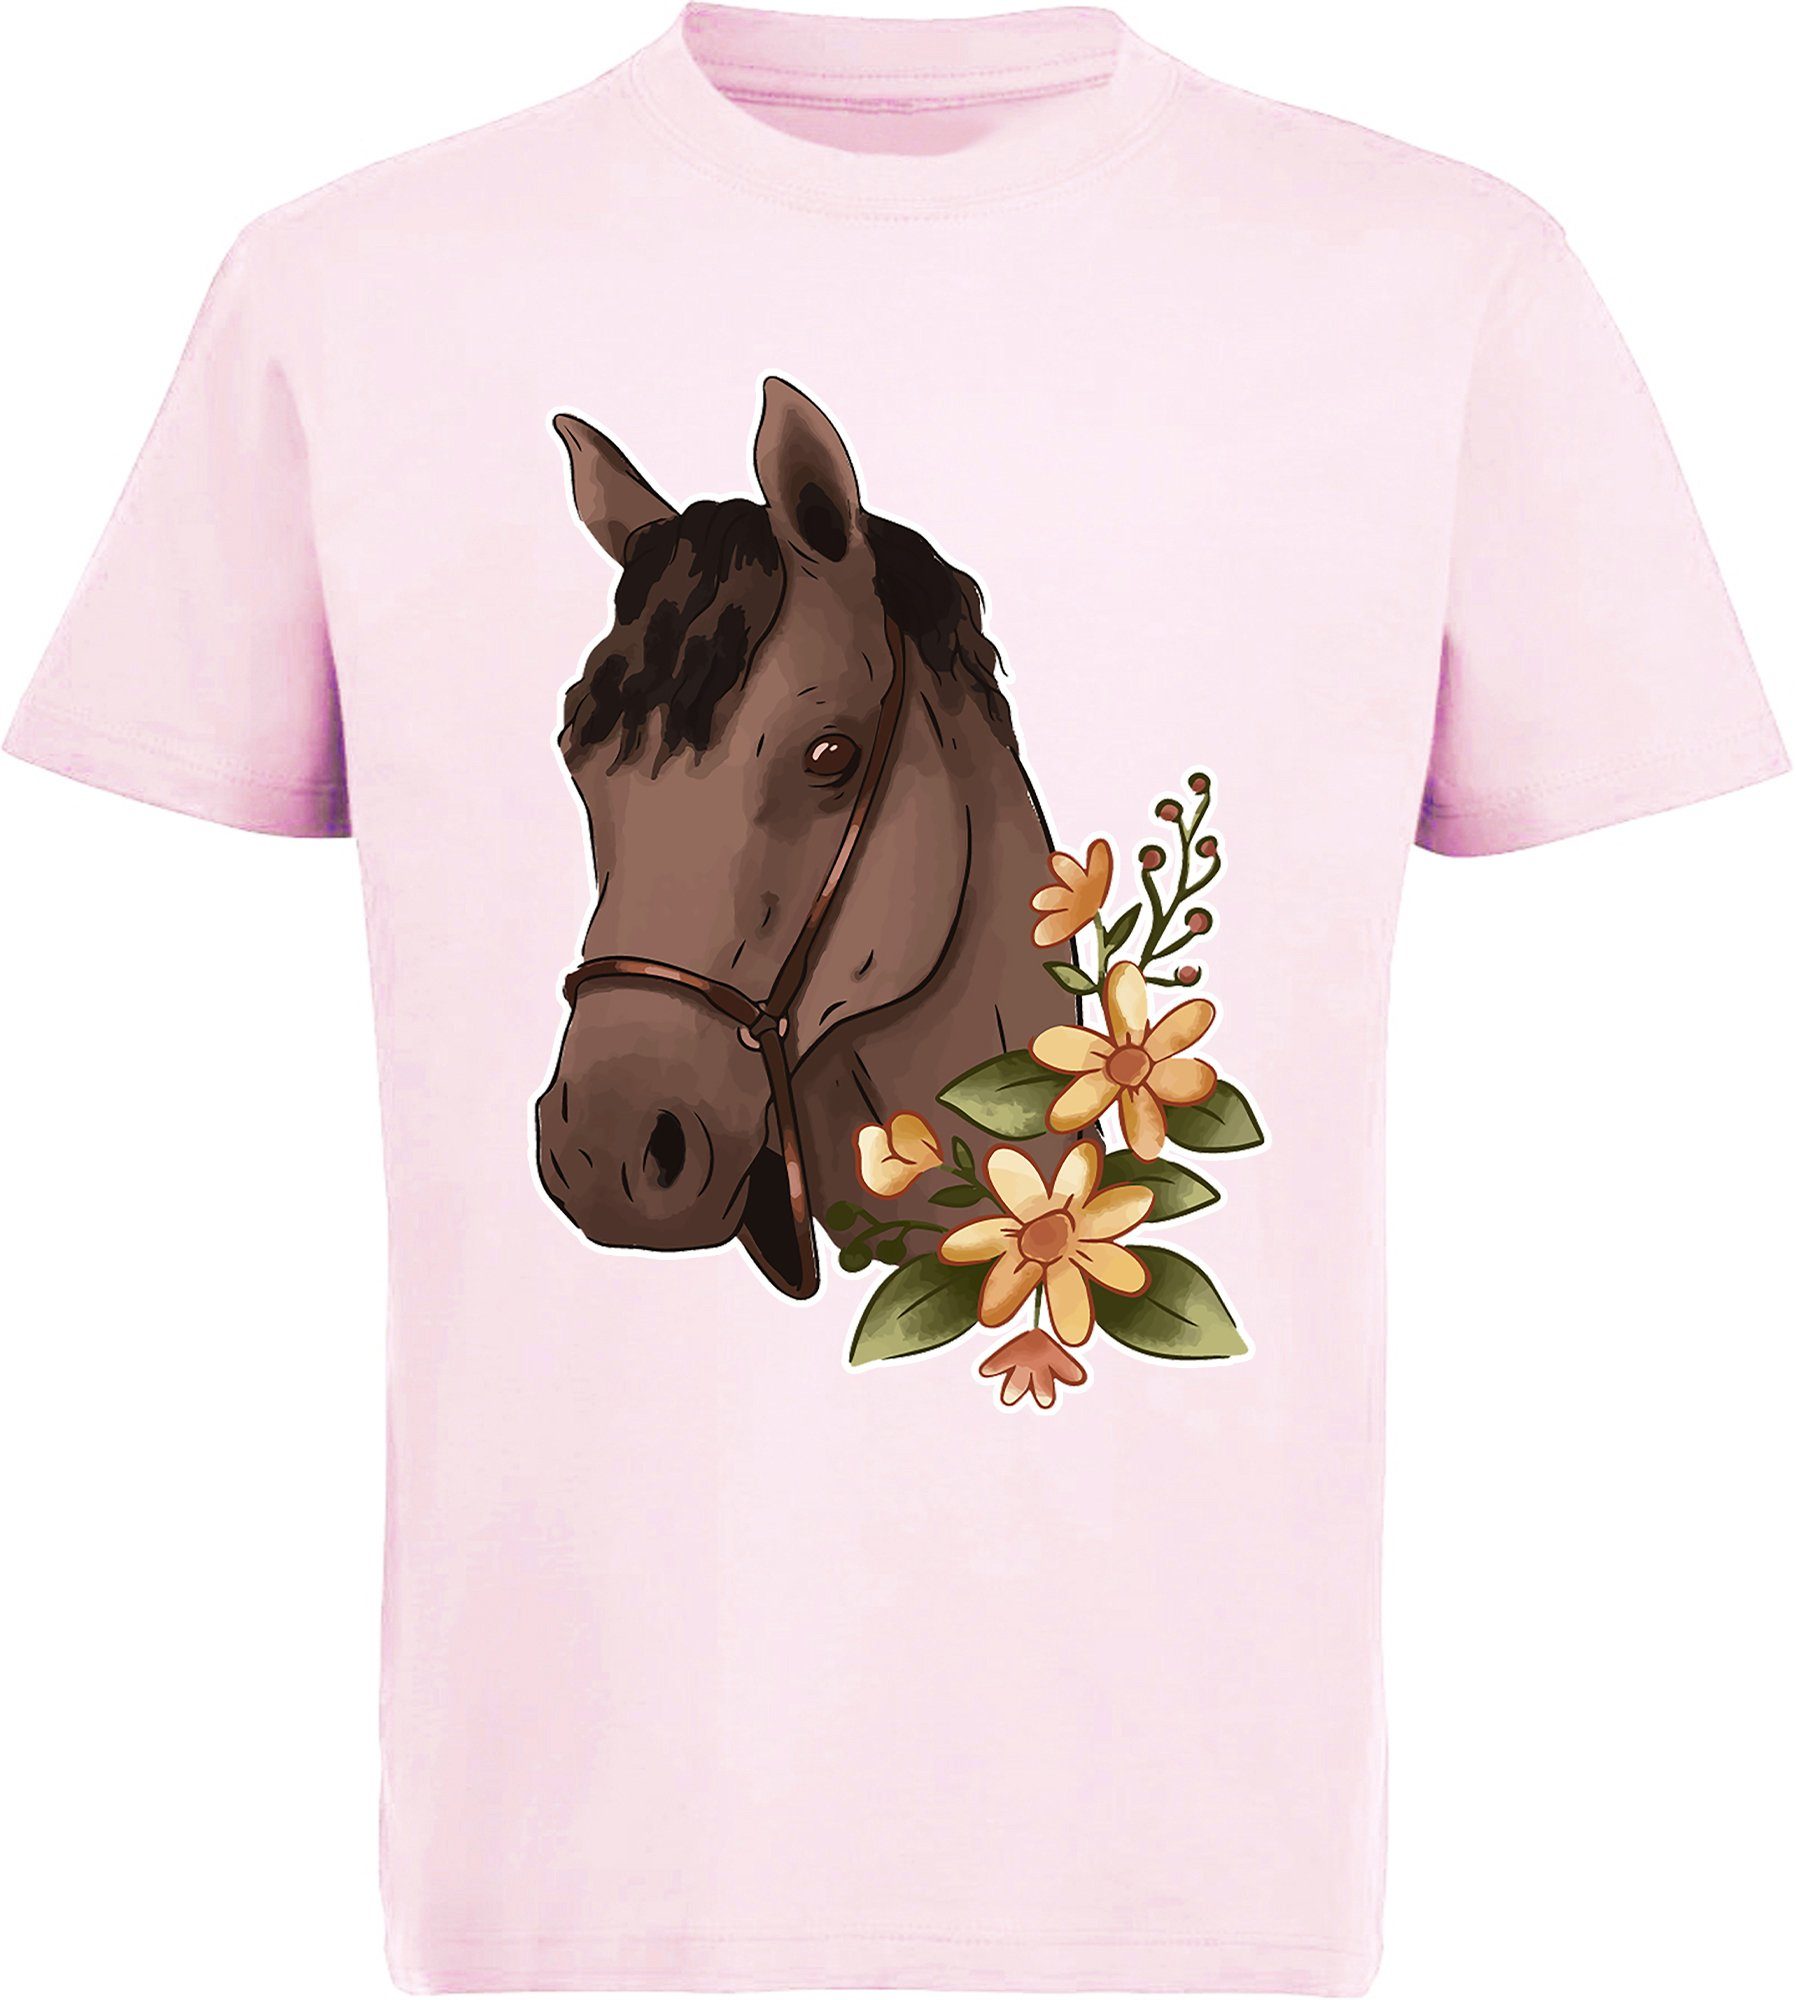 MyDesign24 Print-Shirt bedrucktes Kinder Mädchen T-Shirt - Brauner Pferdekopf und Blumen Baumwollshirt mit Aufdruck, i182